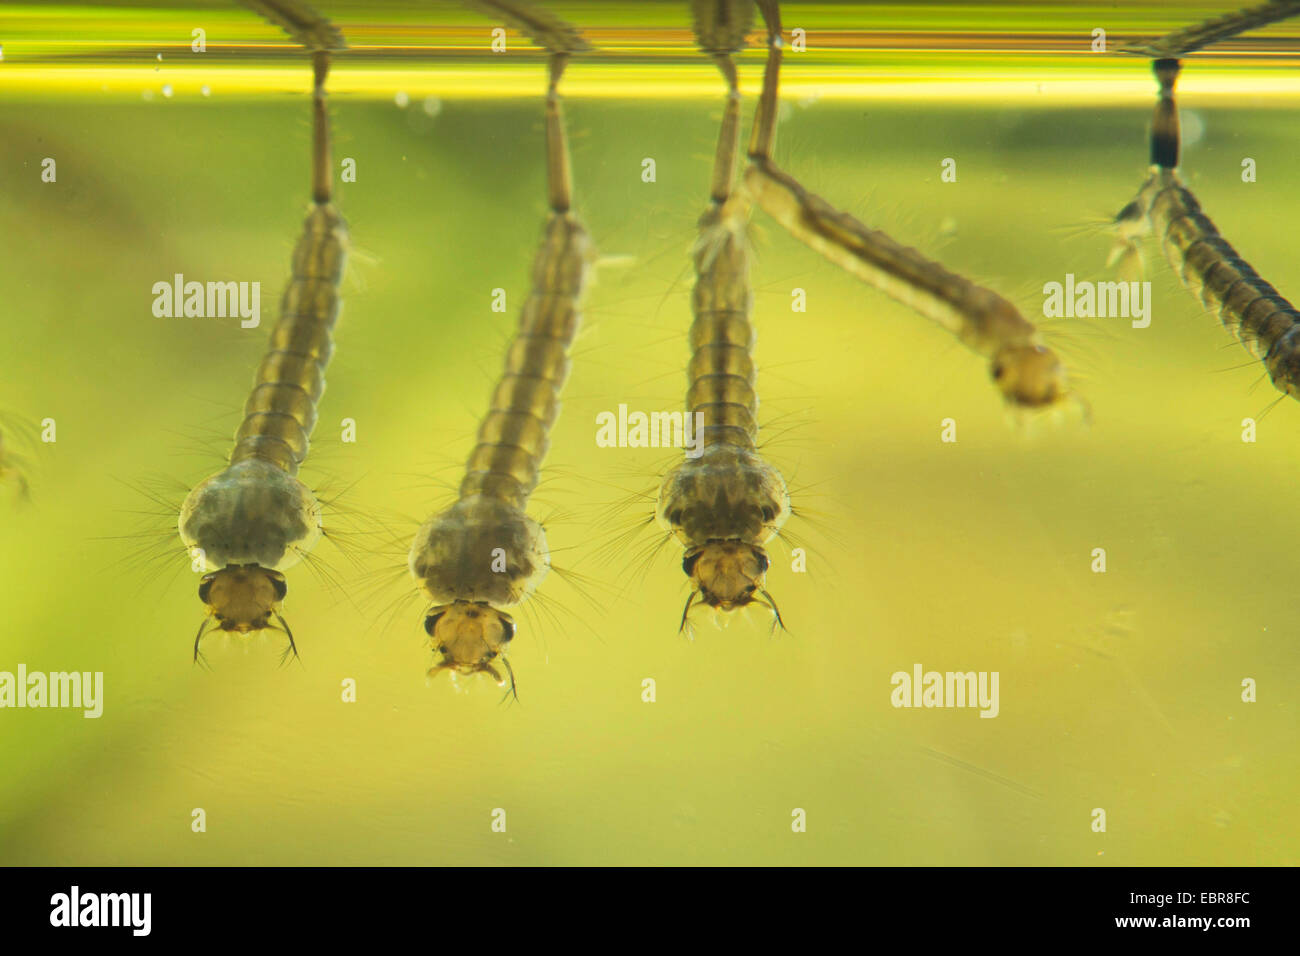 Los mosquitos, los mosquitos (Culicidae), filtrado larvas por debajo de la superficie del agua, Alemania Foto de stock